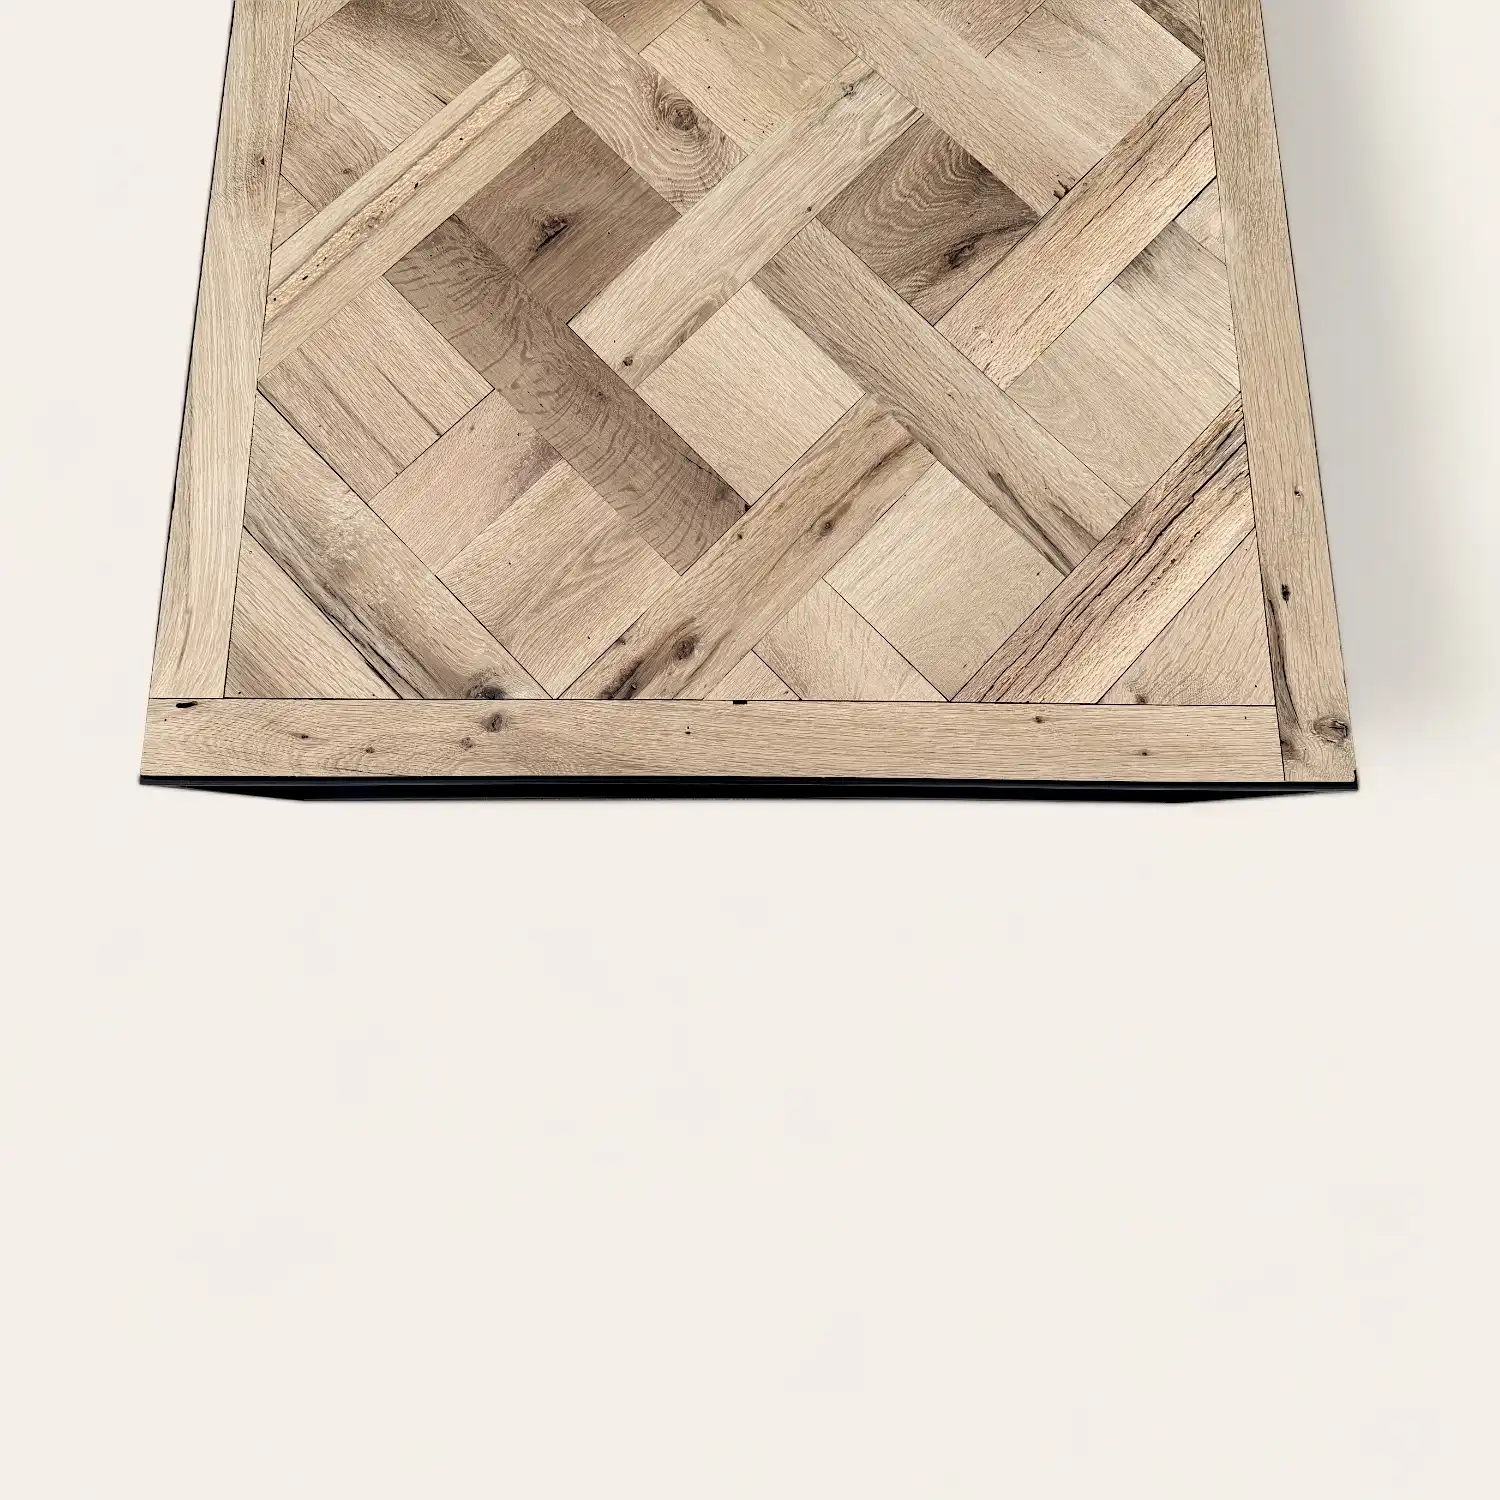  Une table basse en bois avec un motif tissé versailles. 